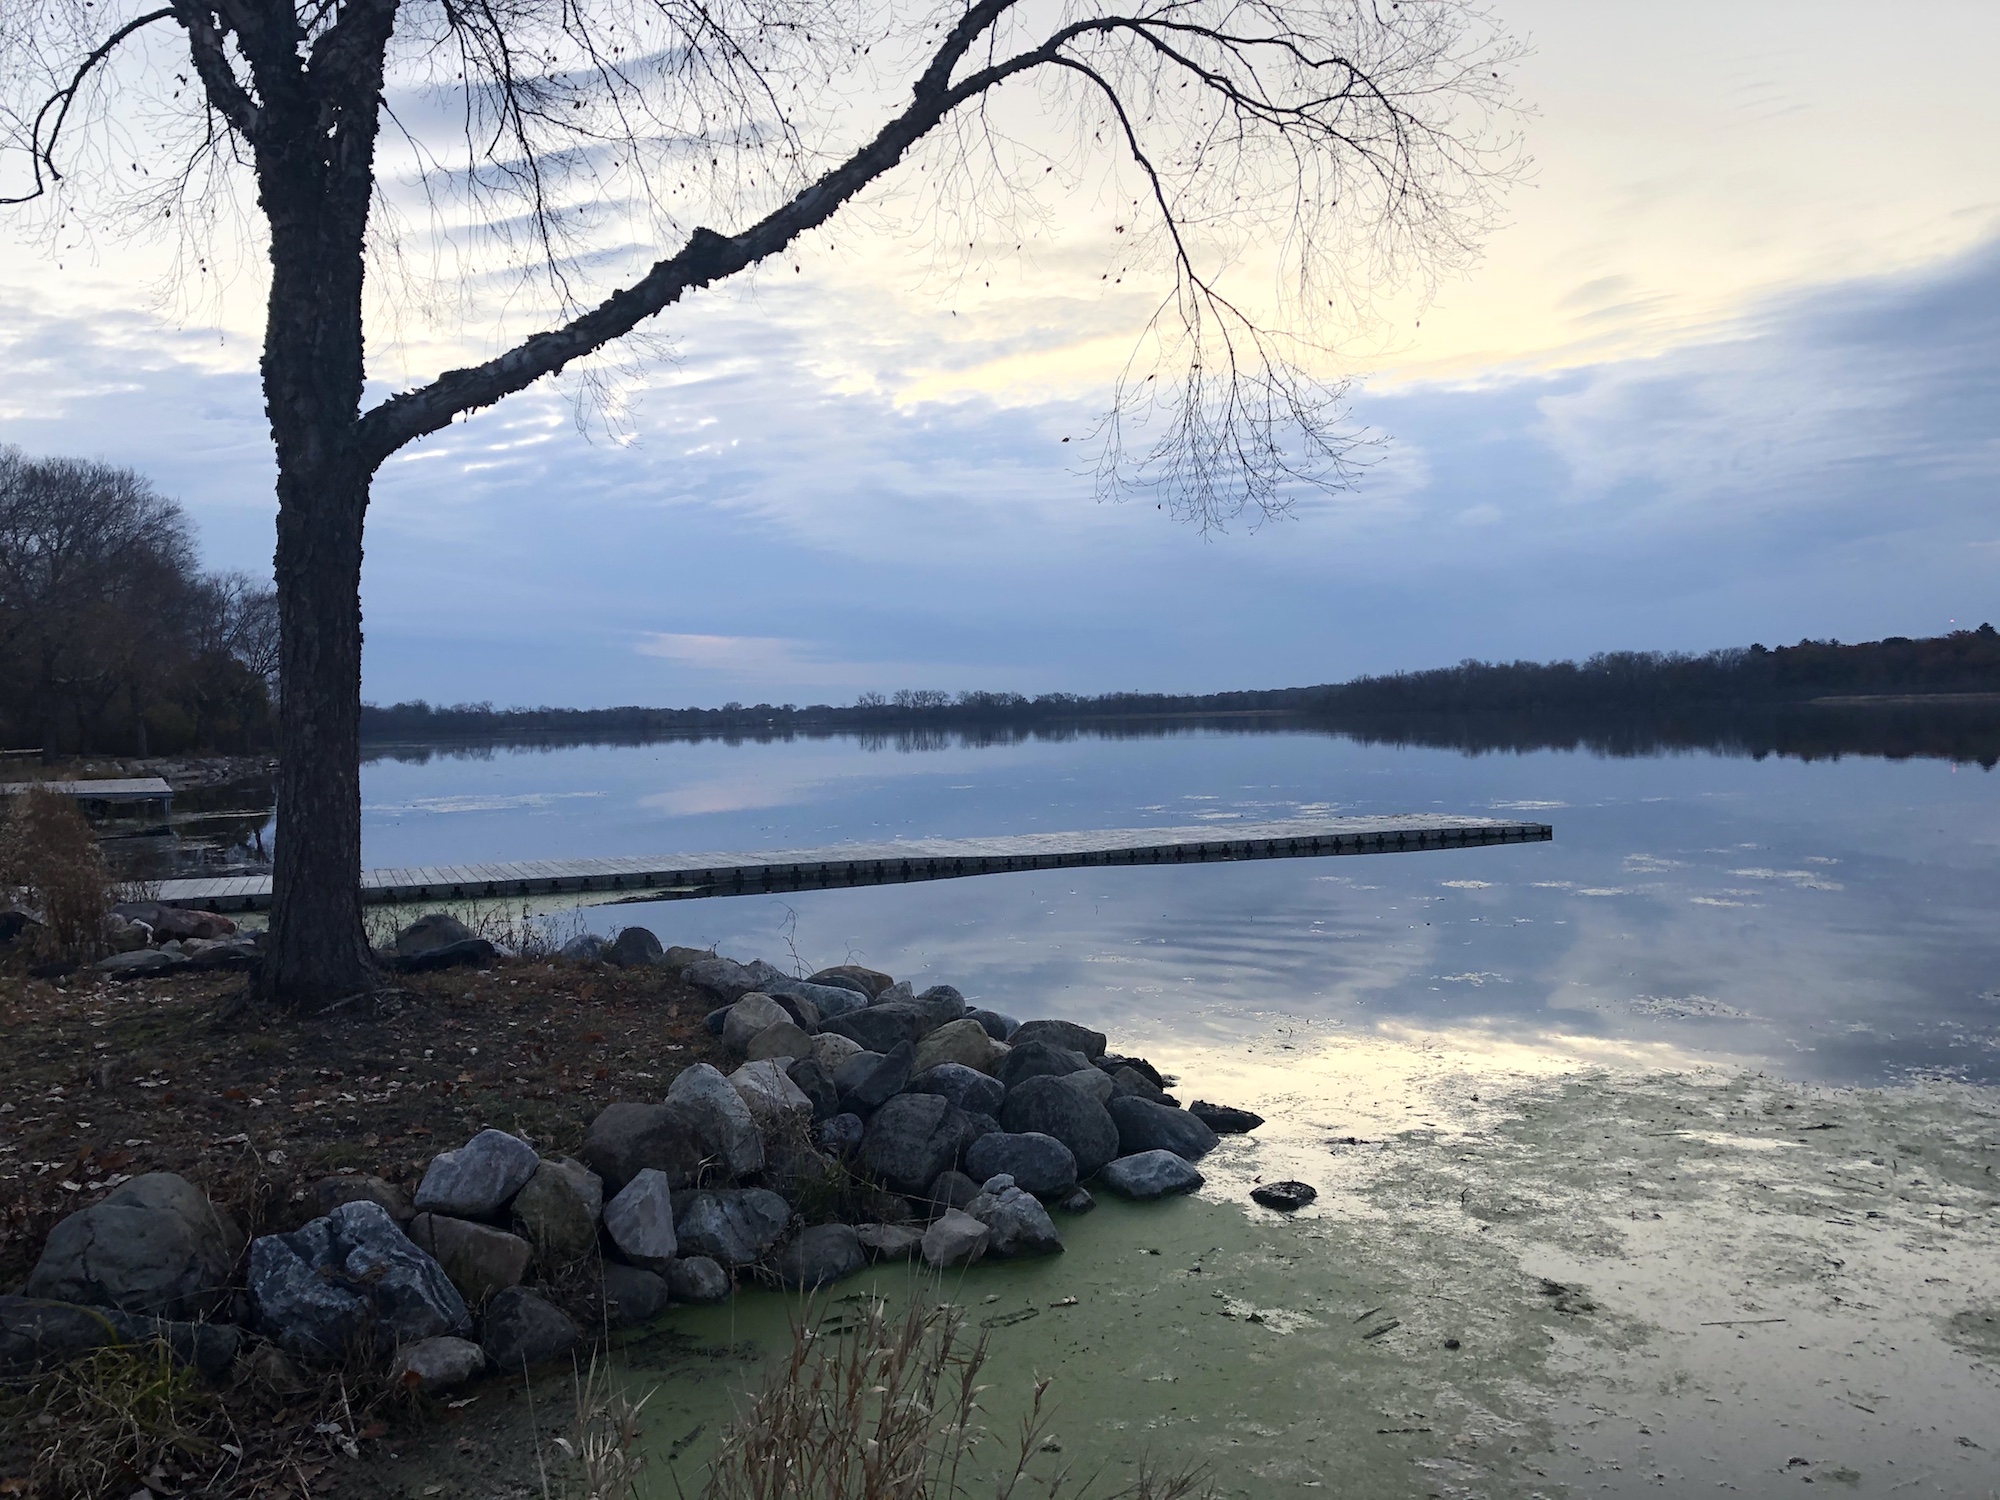 Lake Wingra on November 3, 2019.